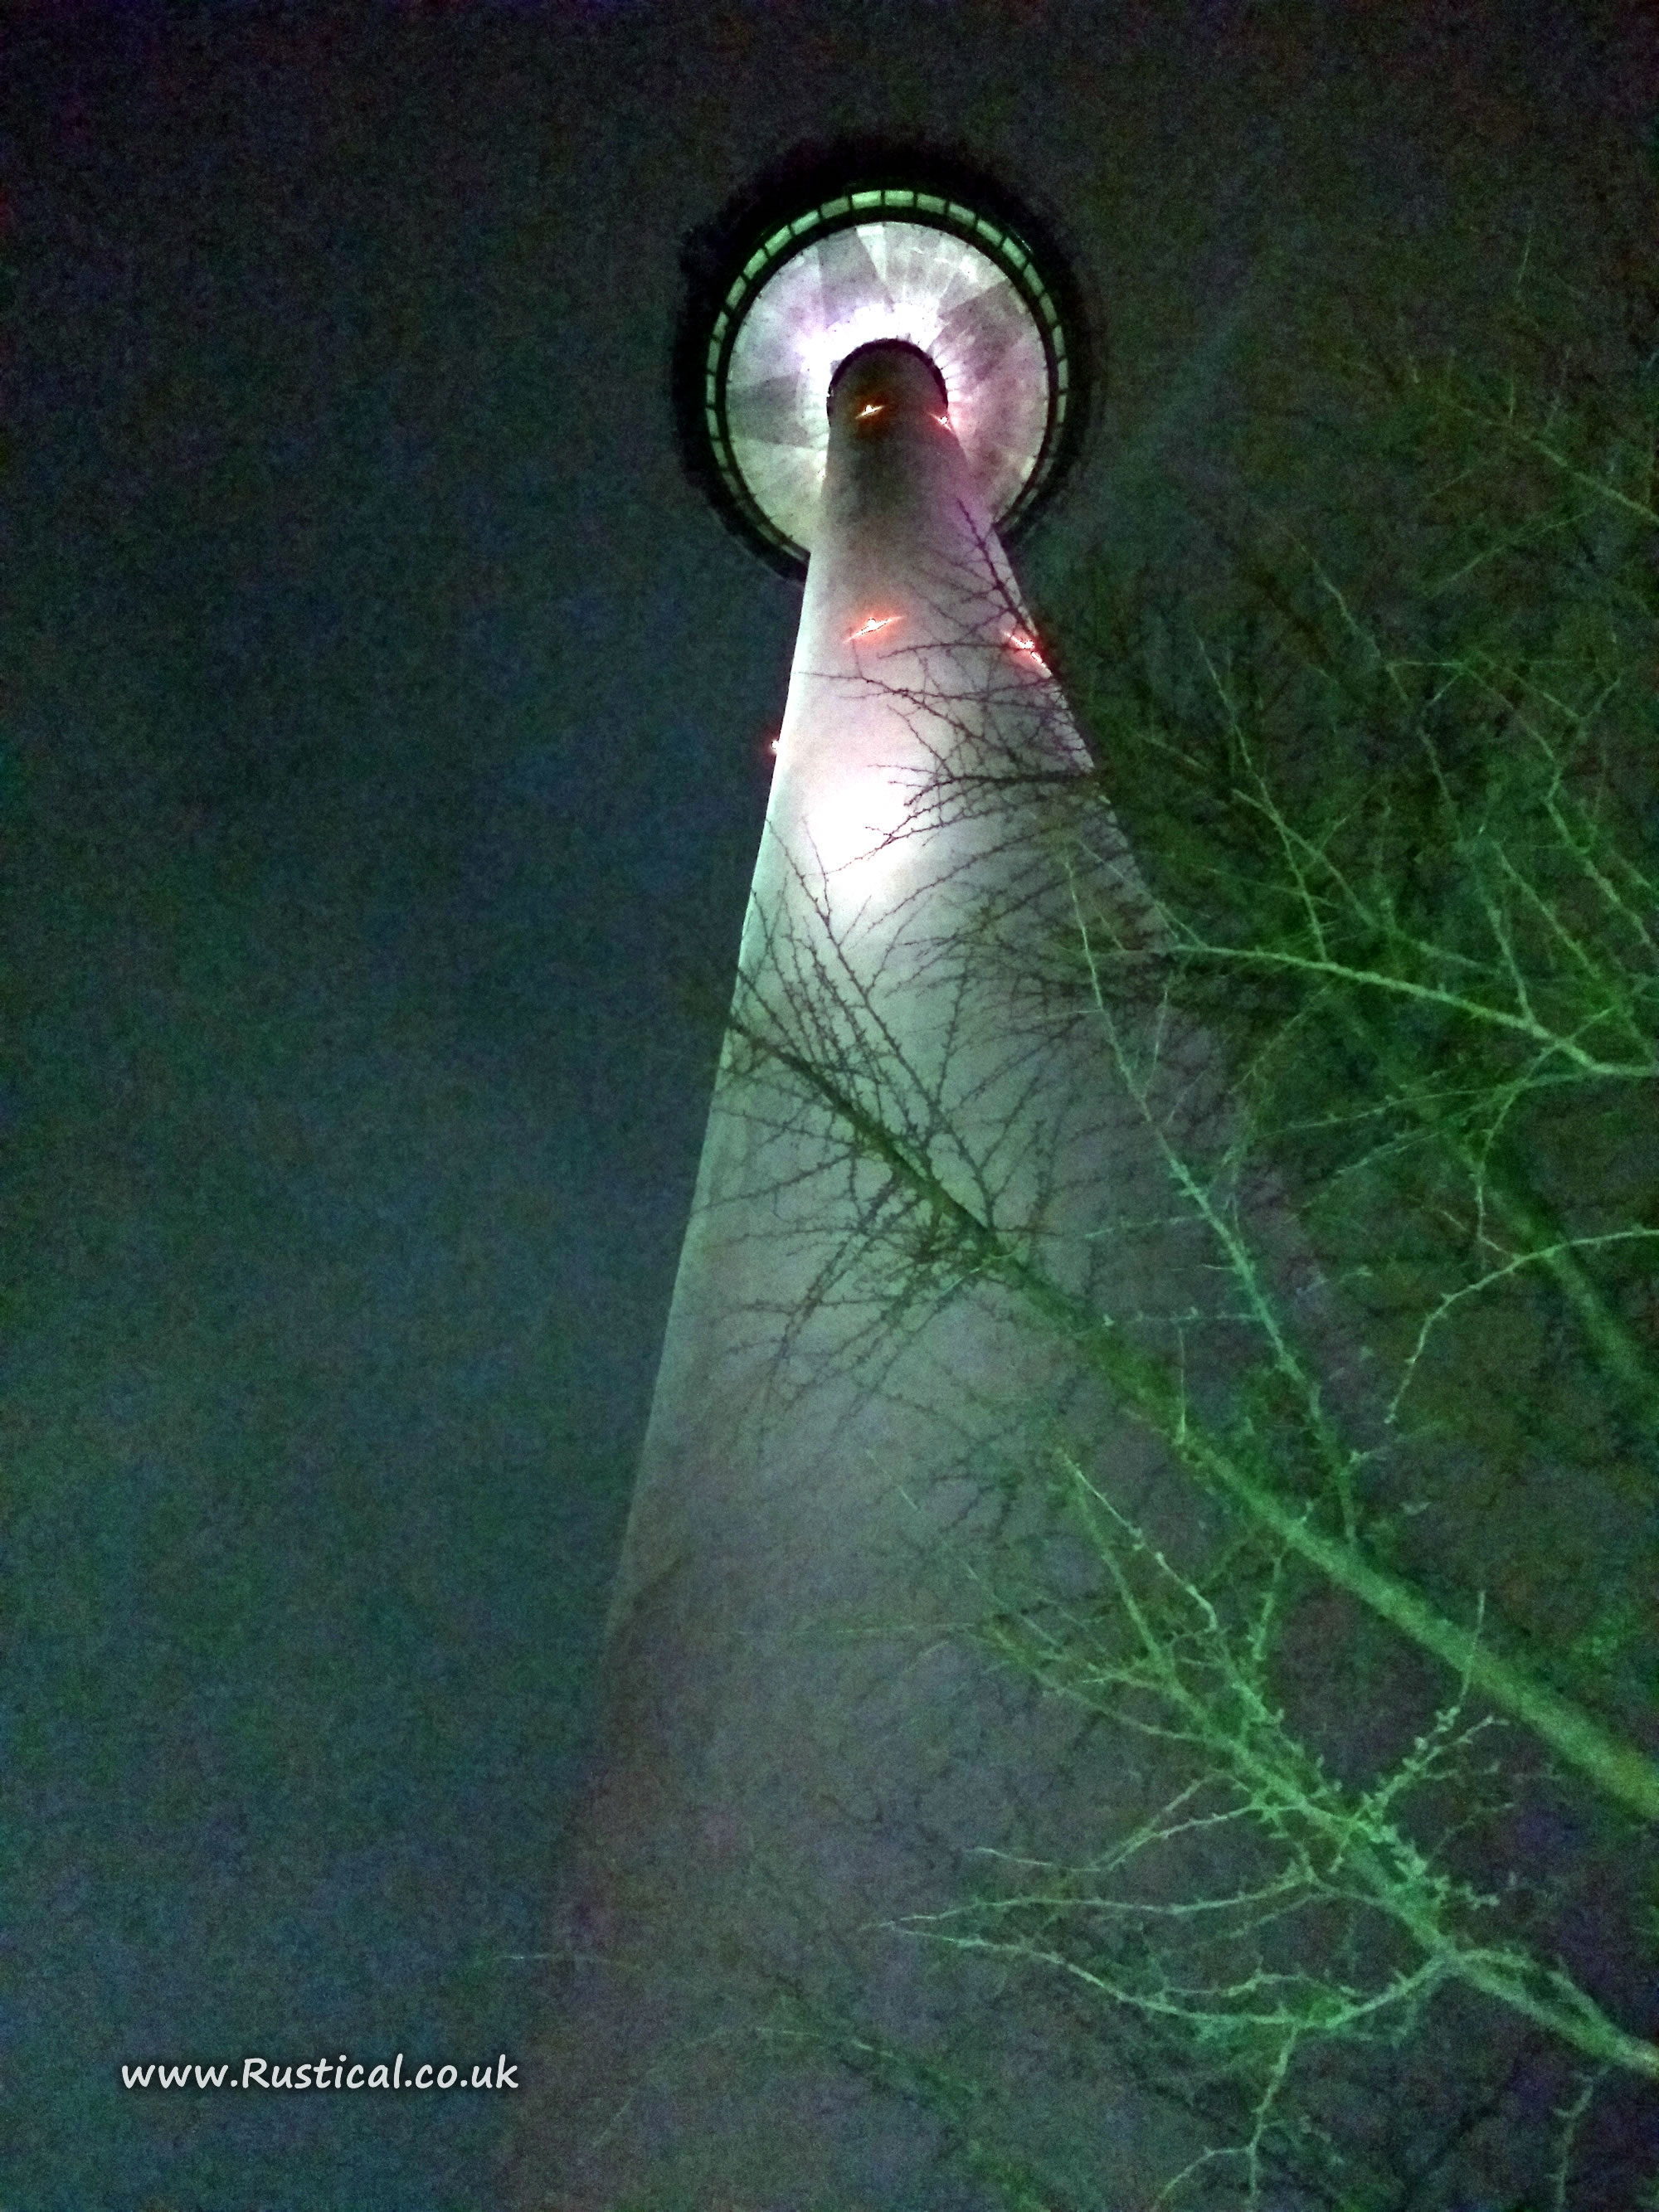 The Skyline rotating restaurant at Mannheim